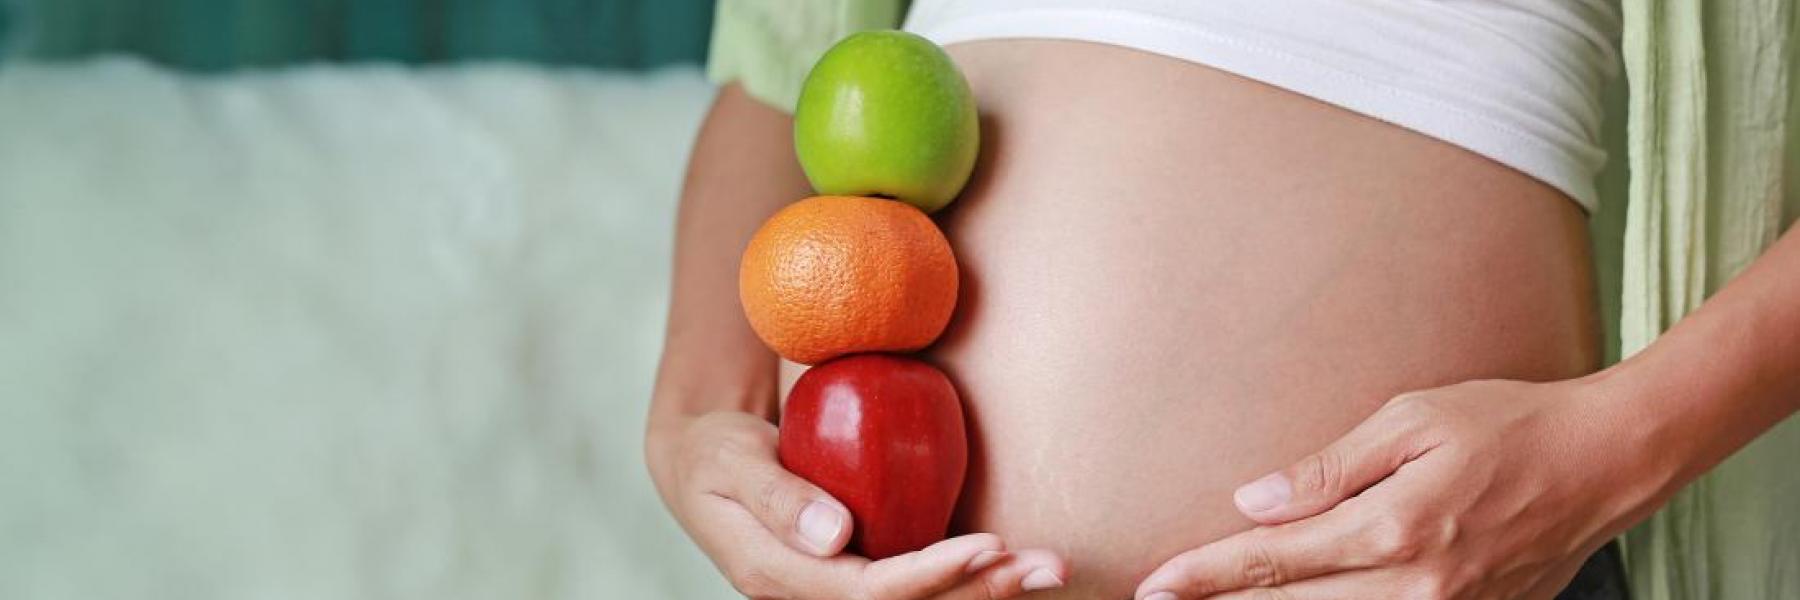 هل من الآمن اتباع نظام غذائي نباتي خلال فترة الحمل؟ إليك الإجابة